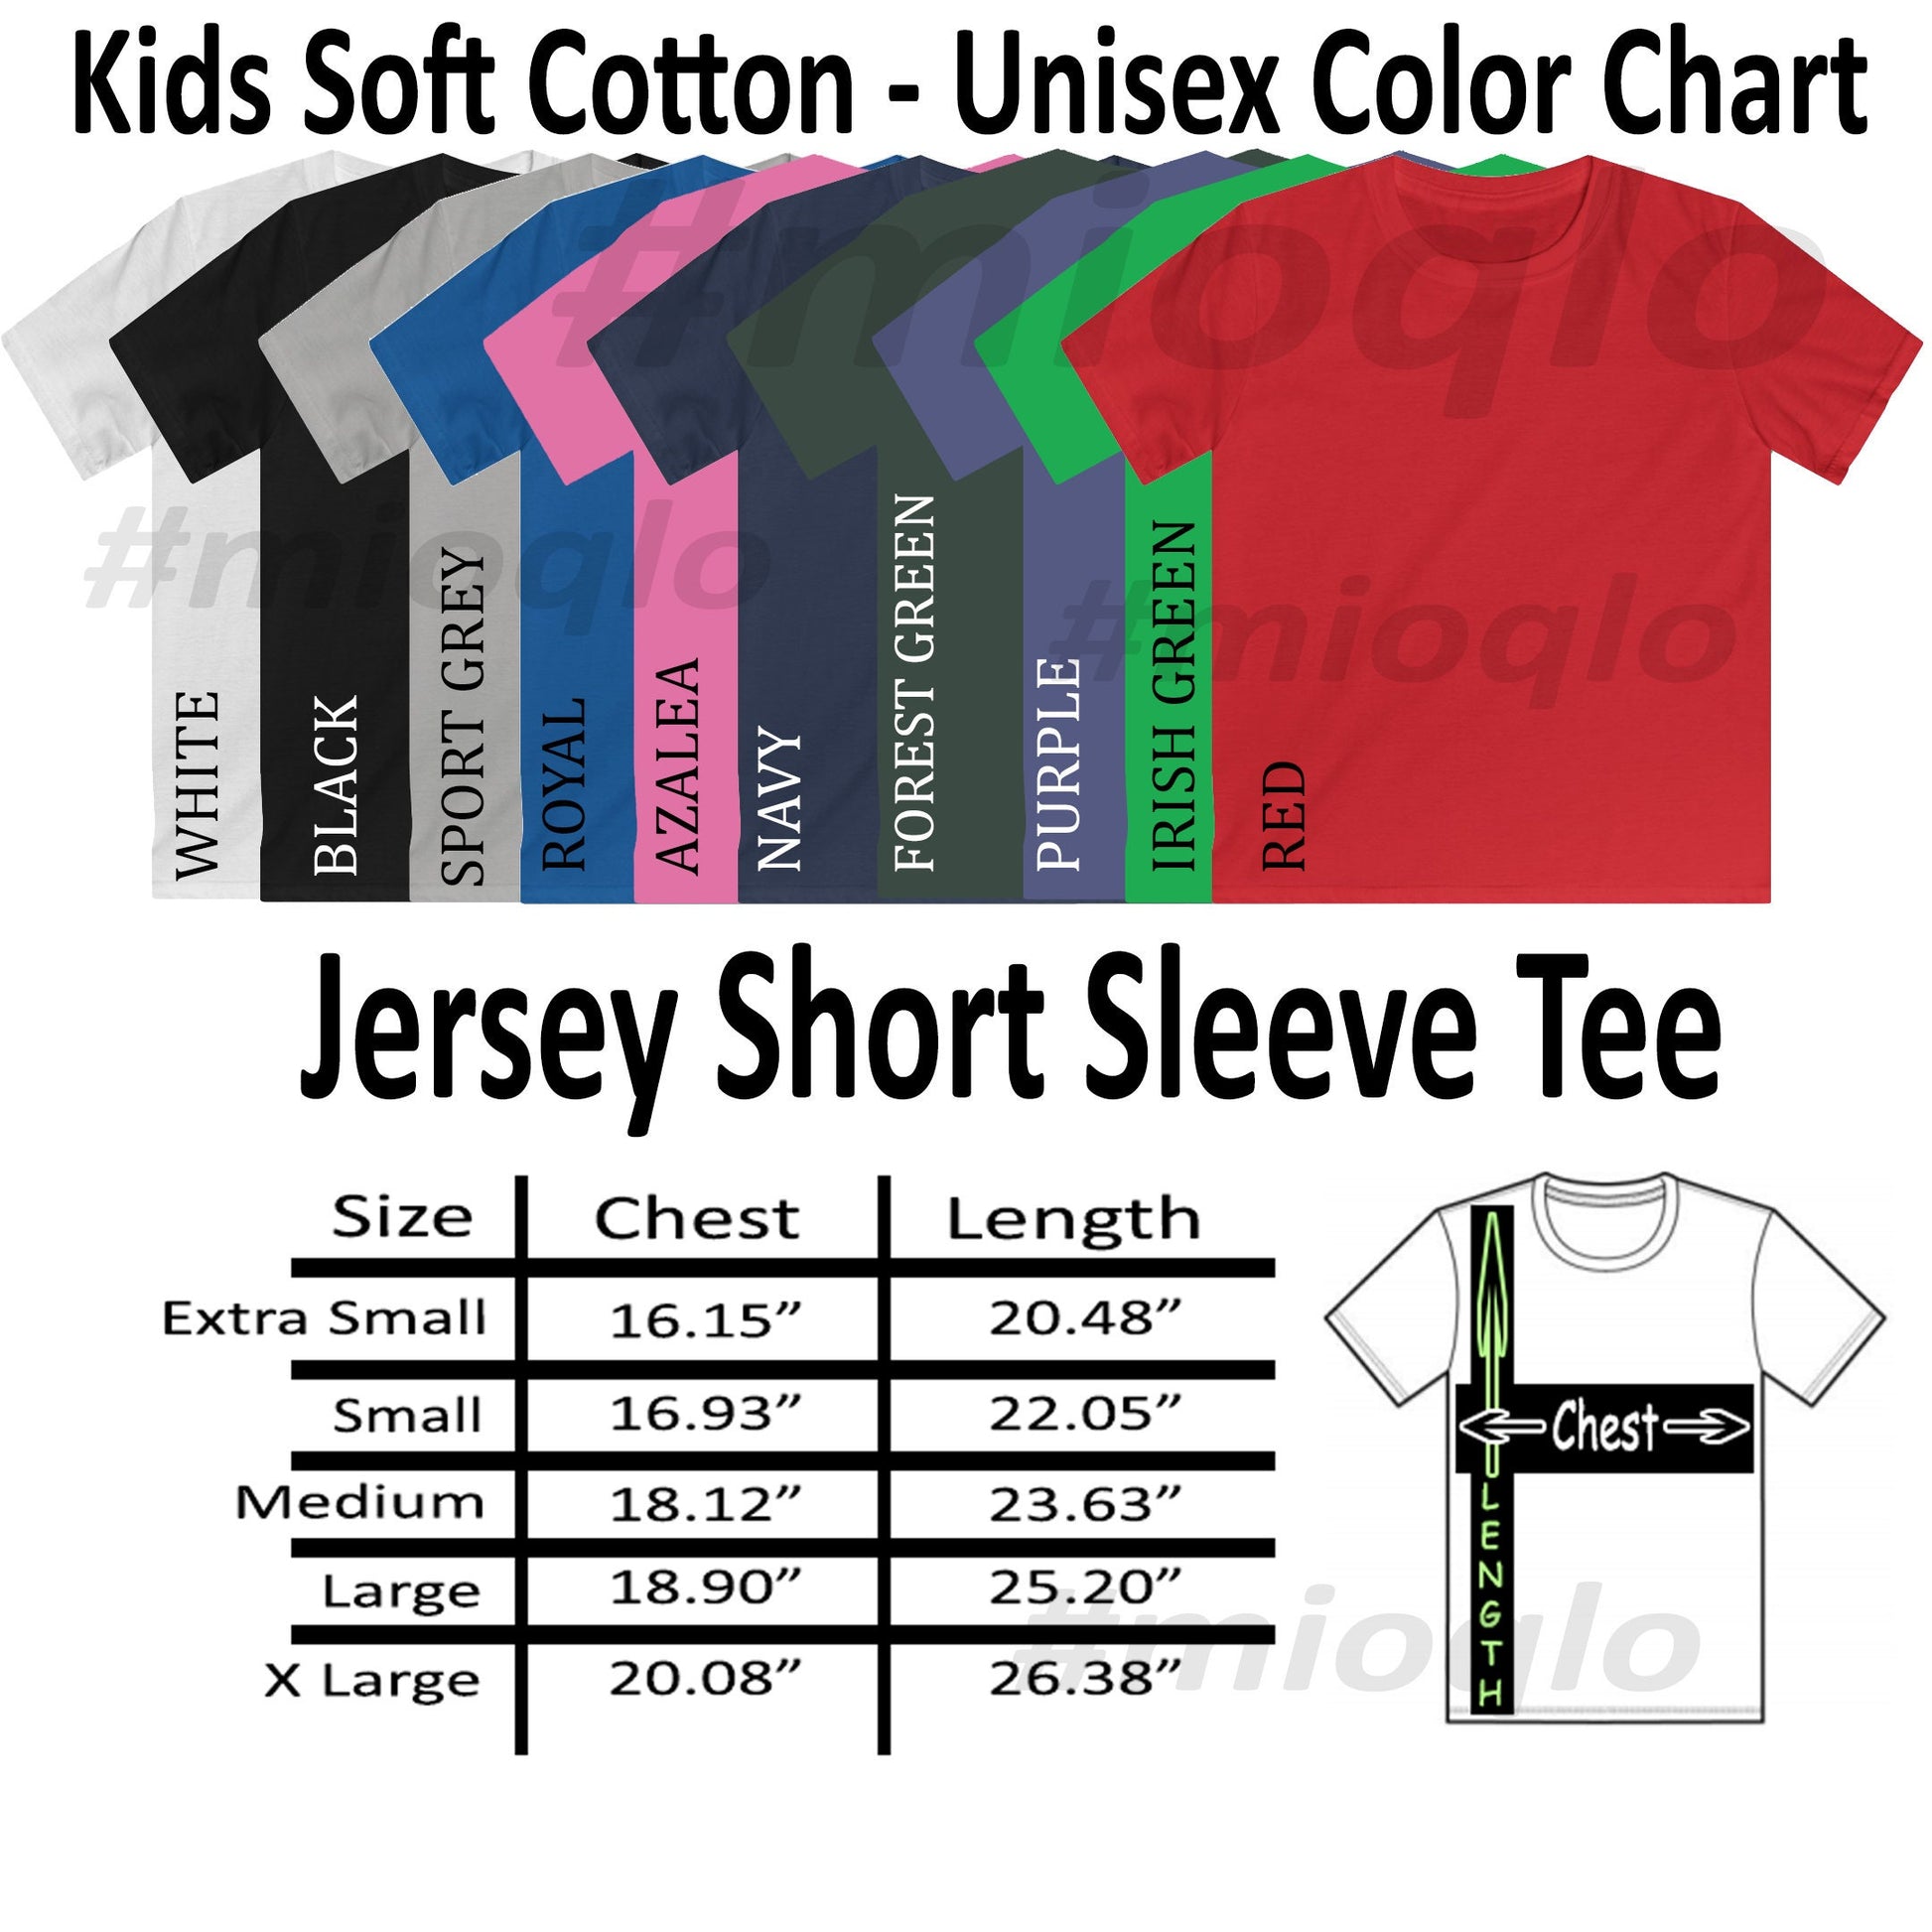 Fifth Grade Outfit, Custom Kids Name Shirt, Hello 5th Grade shirt, First Day Of School Shirt, Kindergarten Tee, Announcement Grade School